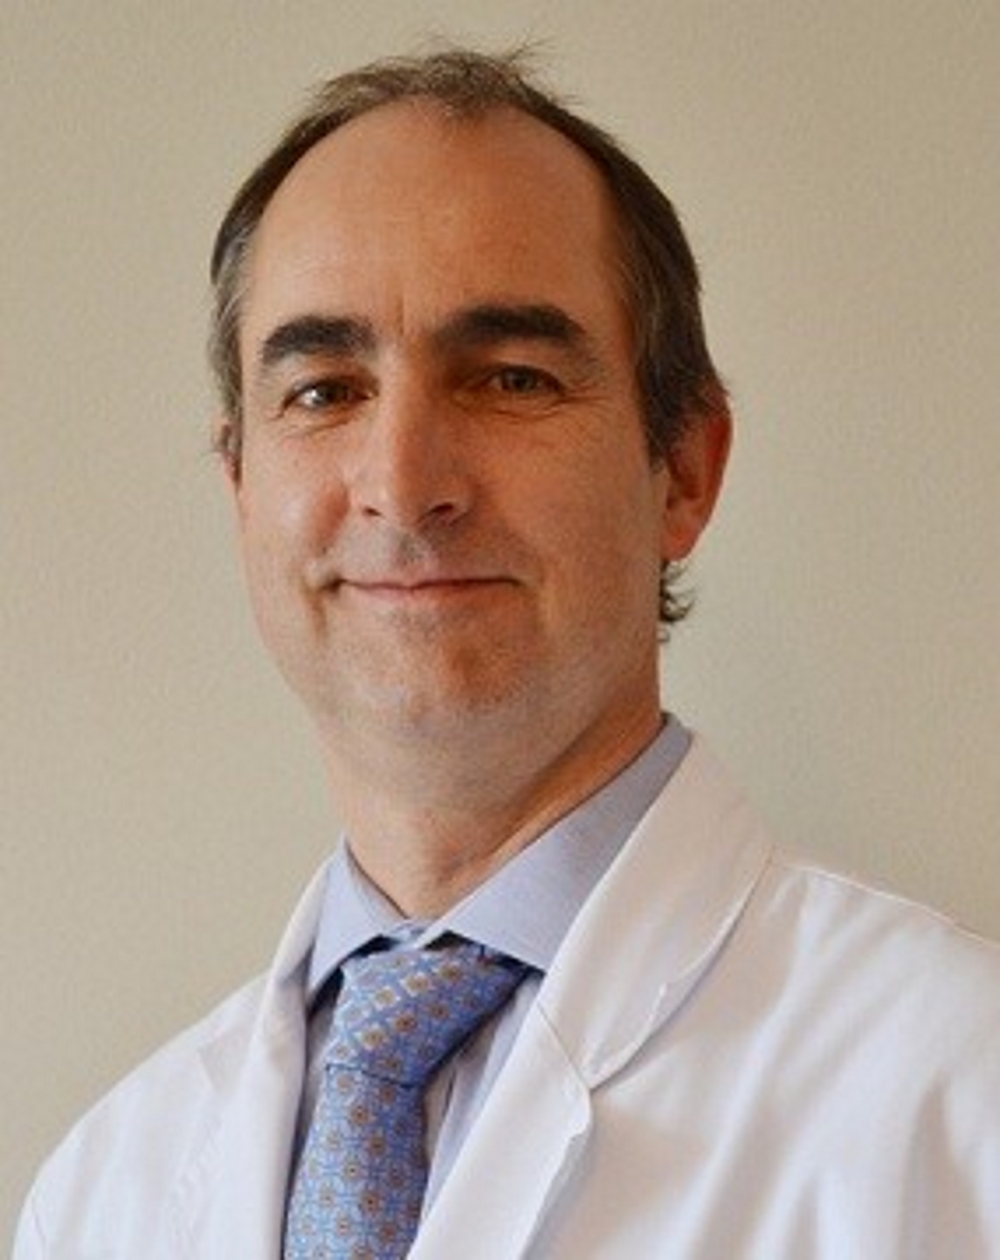 Dr. Thomas Schmidt